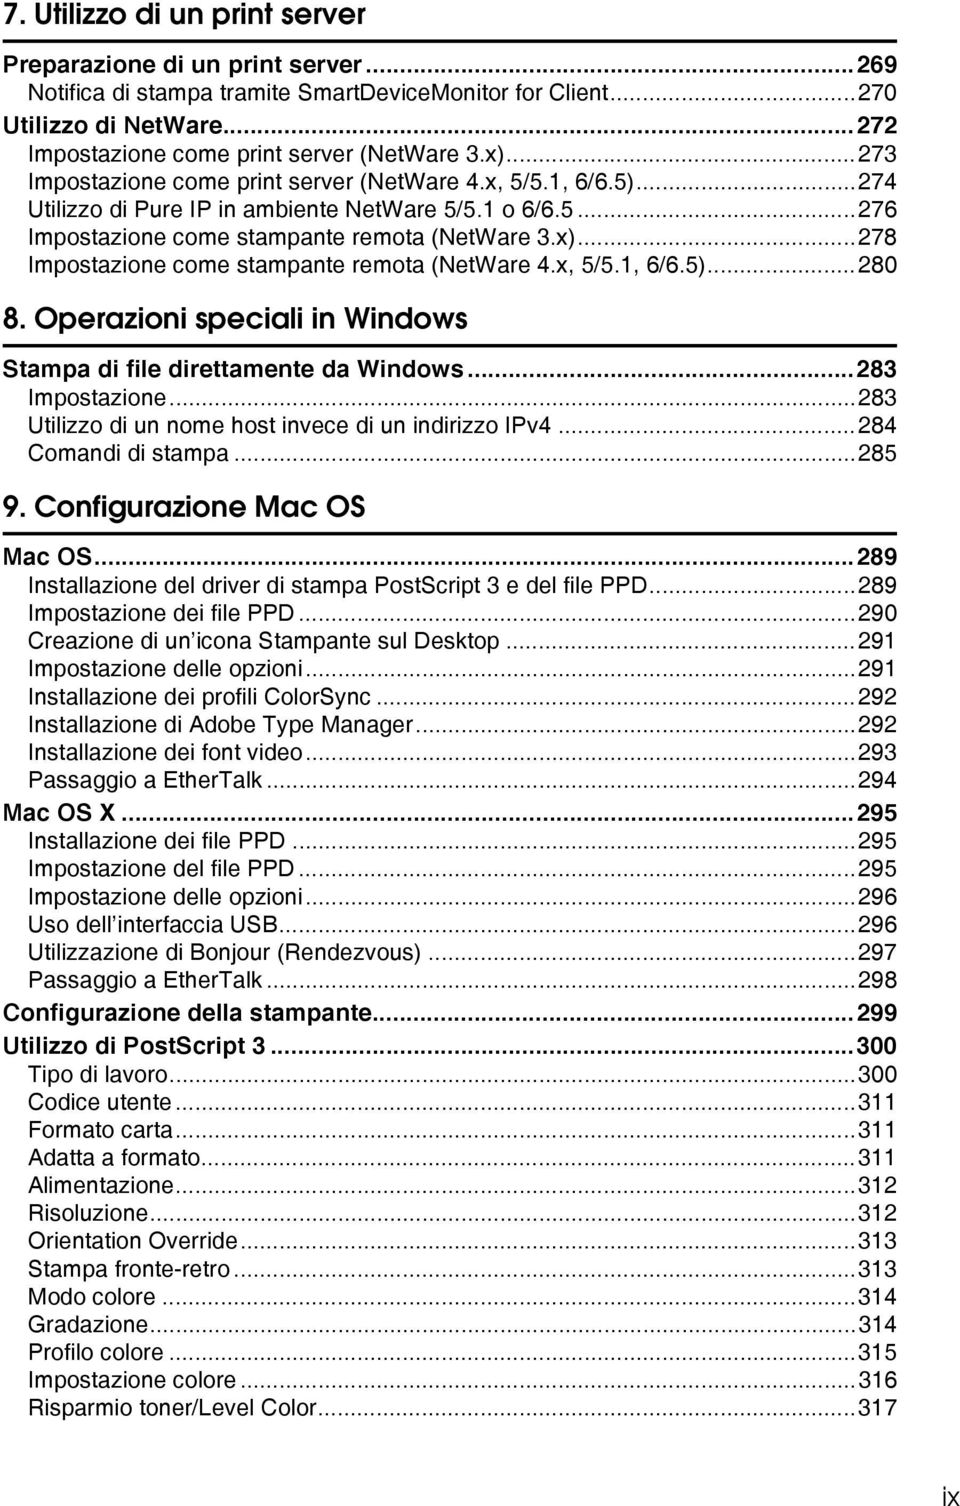 x, 5/5.1, 6/6.5)...280 8. Operazioni speciali in Windows Stampa di file direttamente da Windows...283 Impostazione...283 Utilizzo di un nome host invece di un indirizzo IPv4...284 Comandi di stampa.